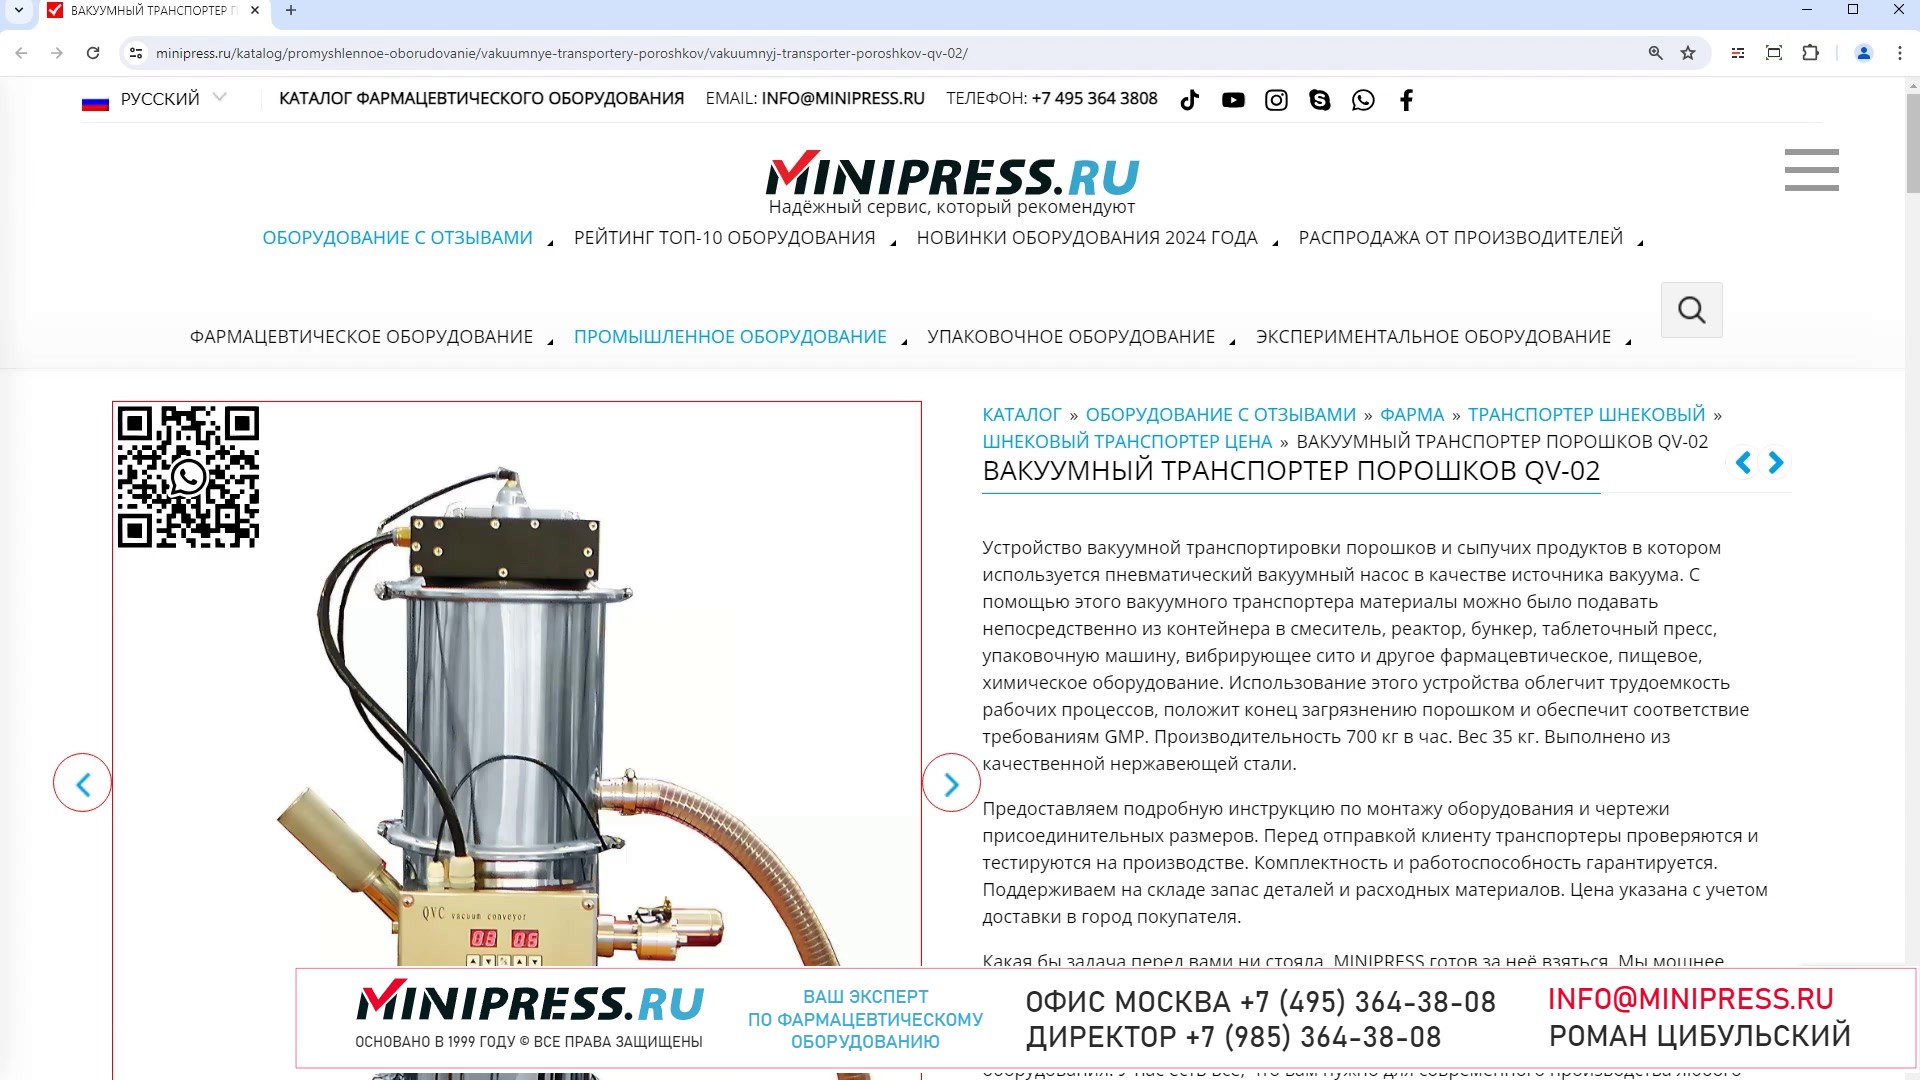 Minipress.ru Вакуумный транспортер порошков QV-02